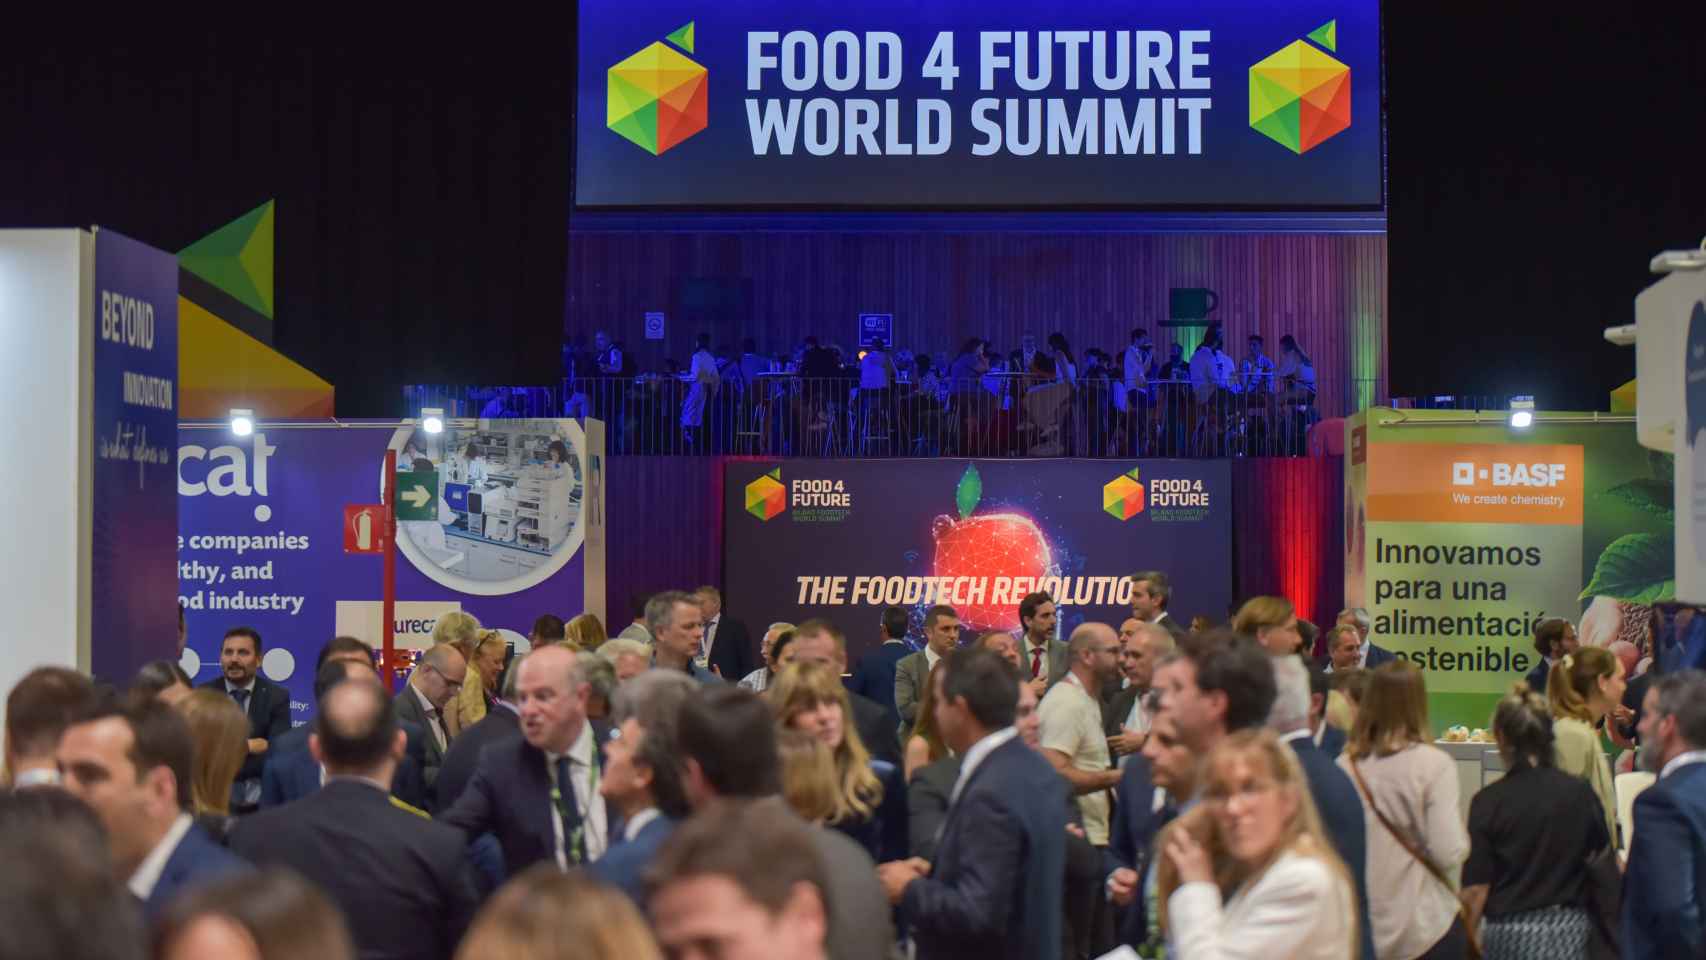 F4F - Expo Foodtech reúne a la industria tecnológica y alimentaria en una tercera edición con grandes retos.